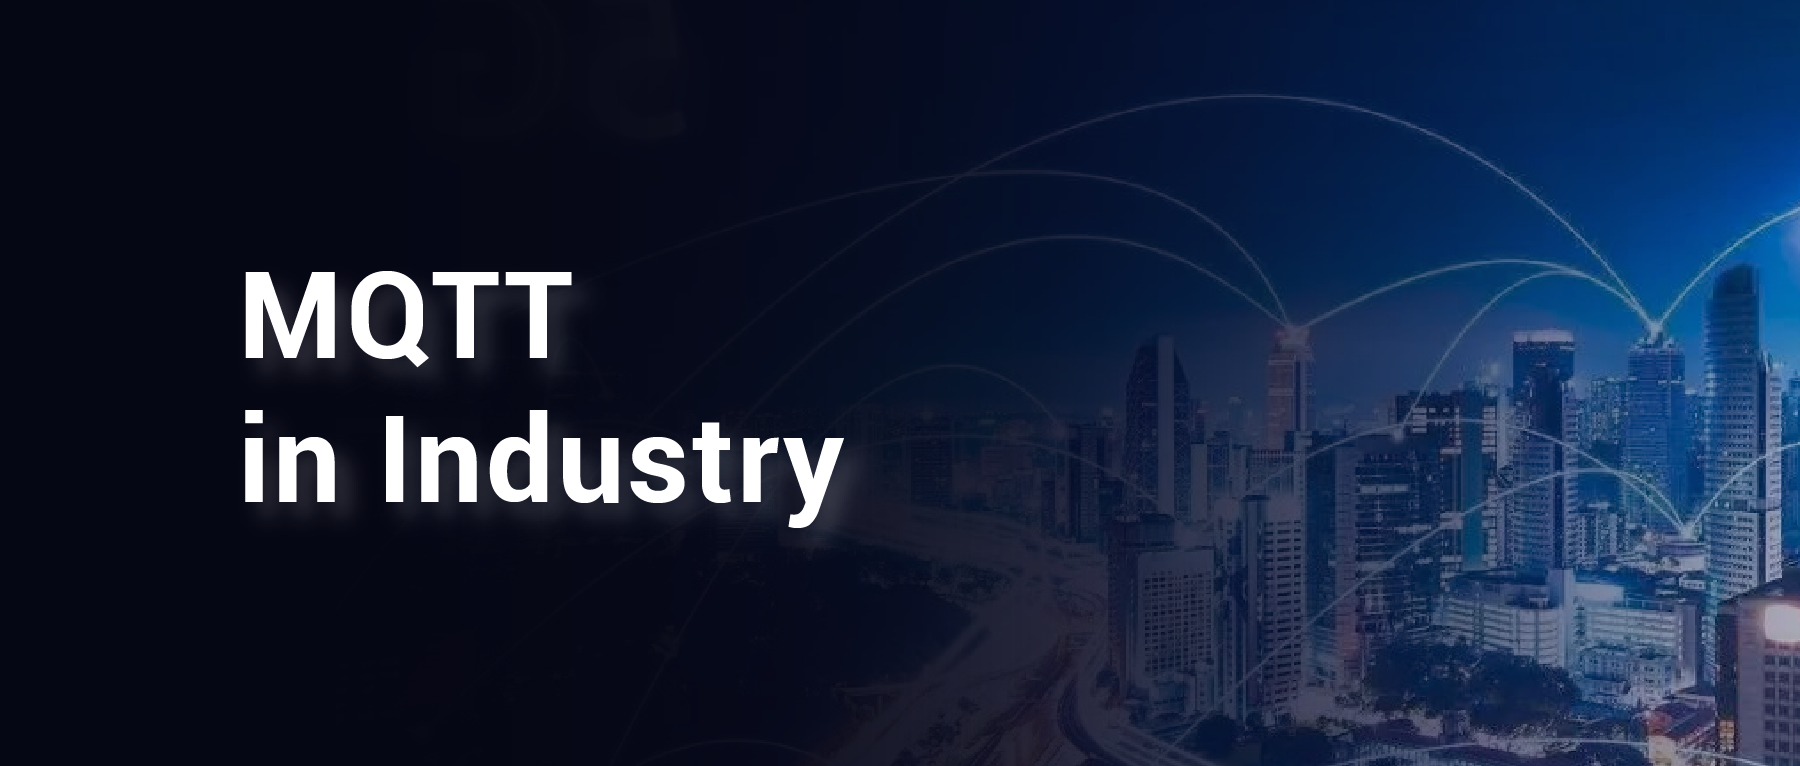 电信运营商基于 MQTT 协议构建千万级 IoT 设备管理平台